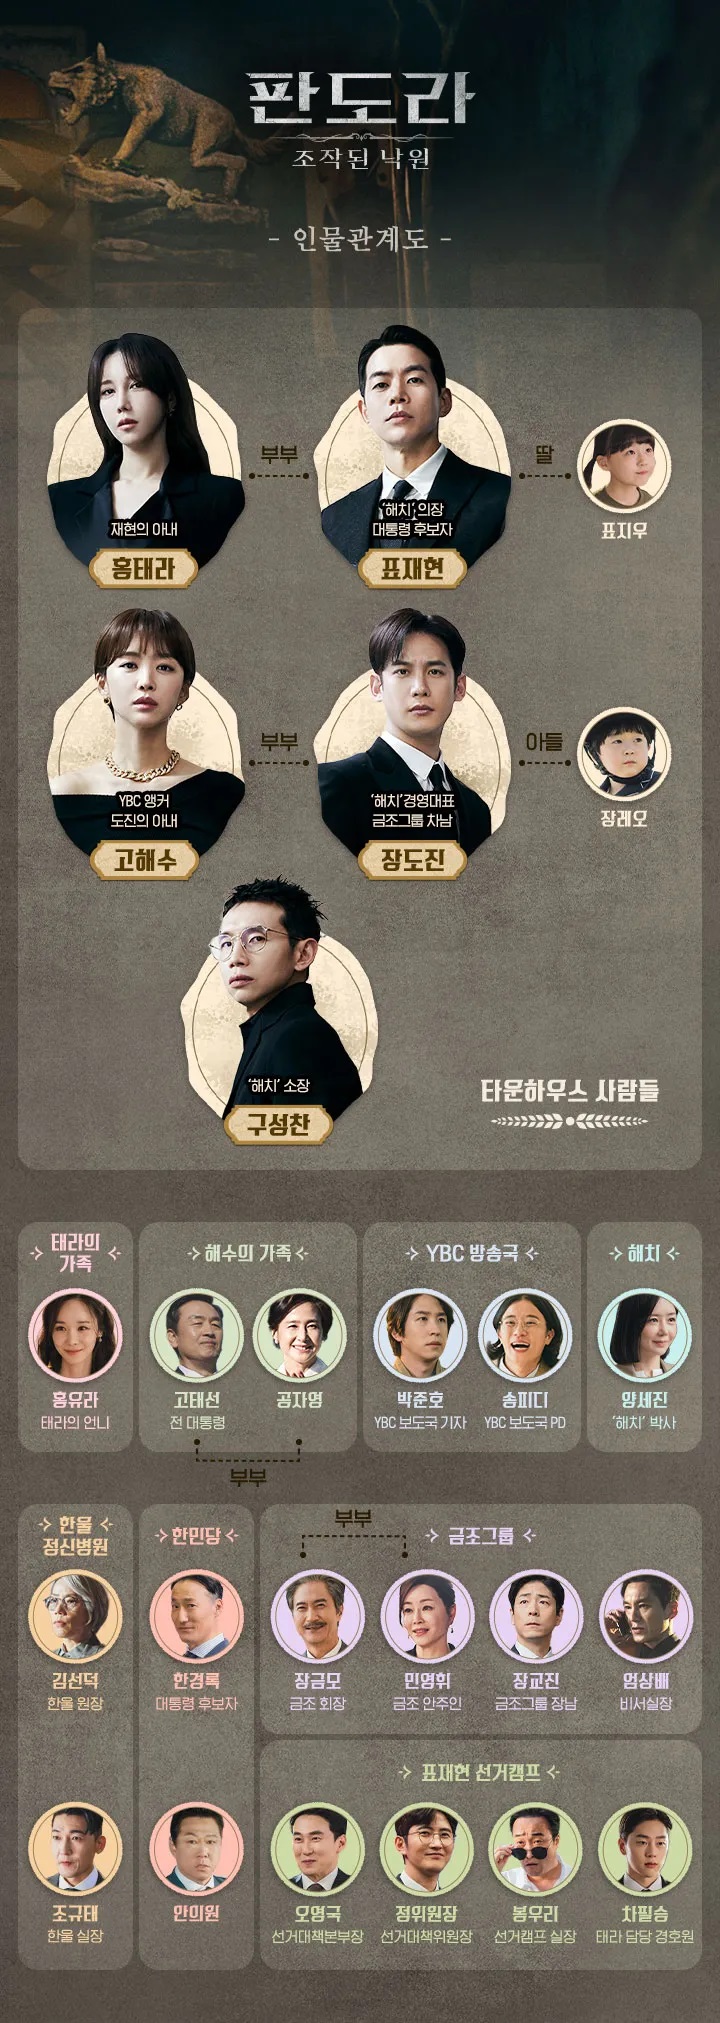 tvN 토일 주말 드라마 &#39;판도라: 조작된 낙원&#39; - 인물 관계도